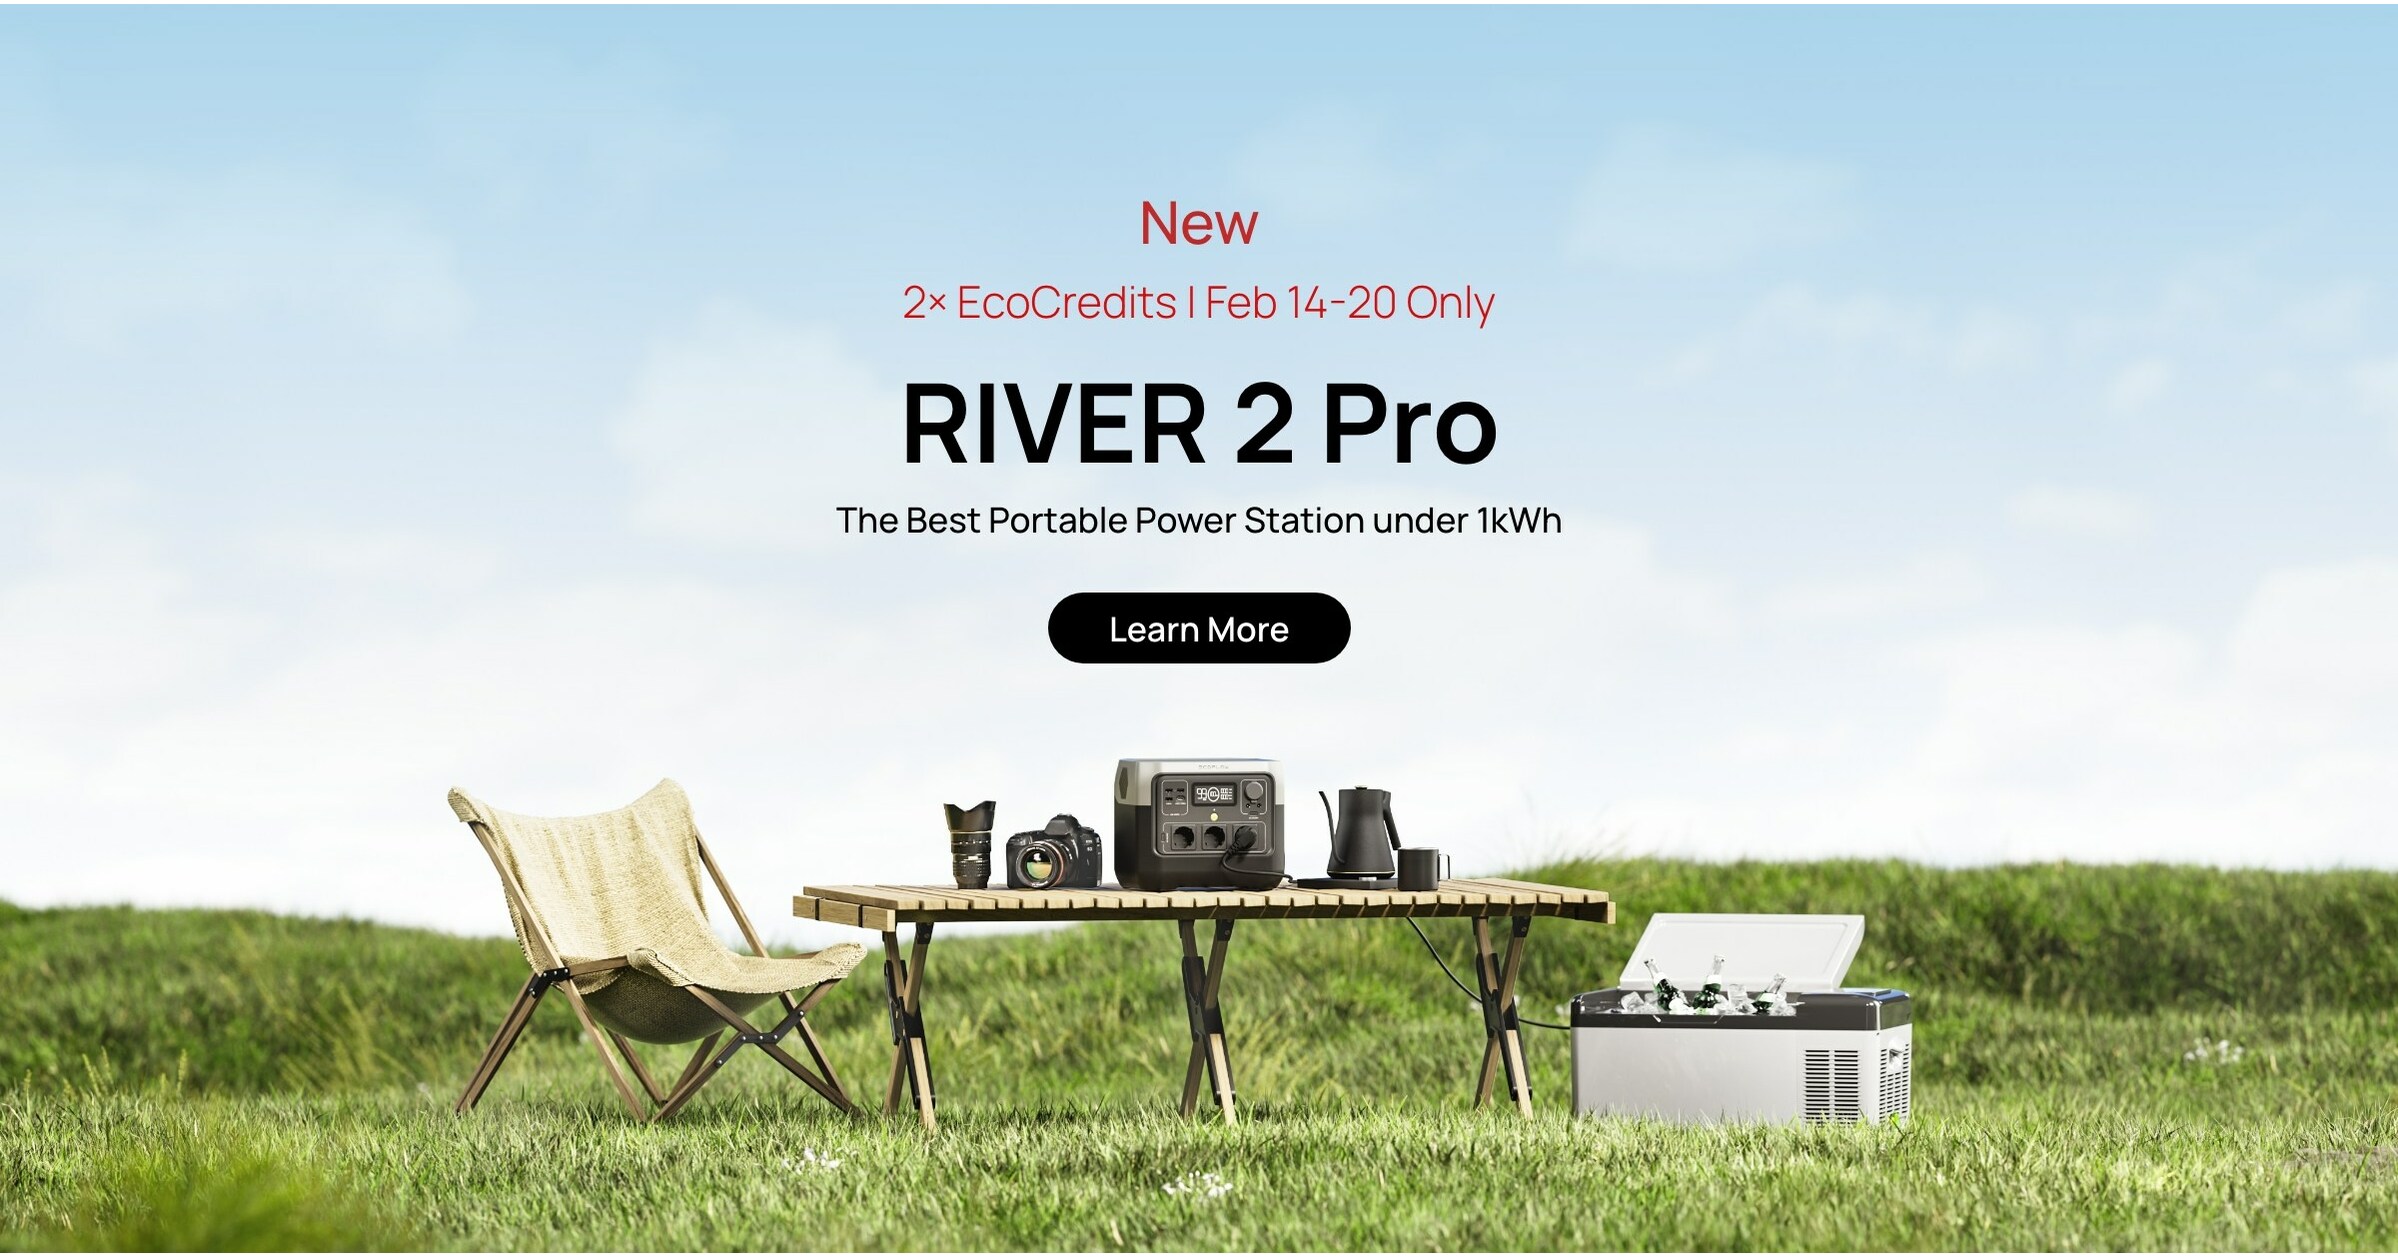 EcoFlow RIVER 2 Pro Portable Power Station